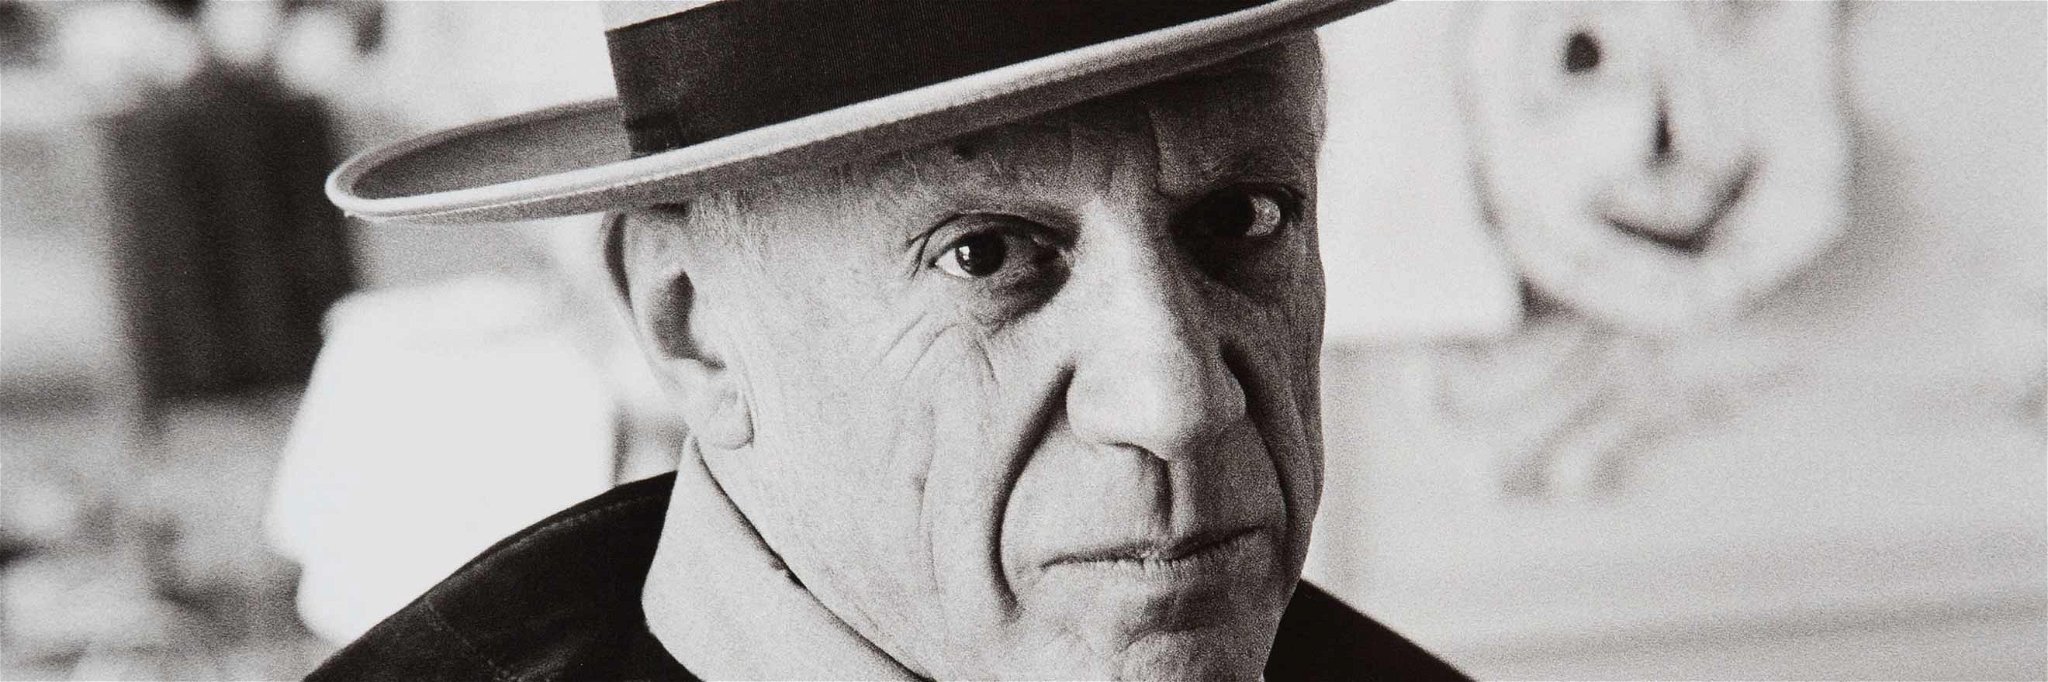 Pablo Picasso&nbsp;gilt als einer&nbsp;der einflussreichsten Künstler des 20. Jahrhunderts.